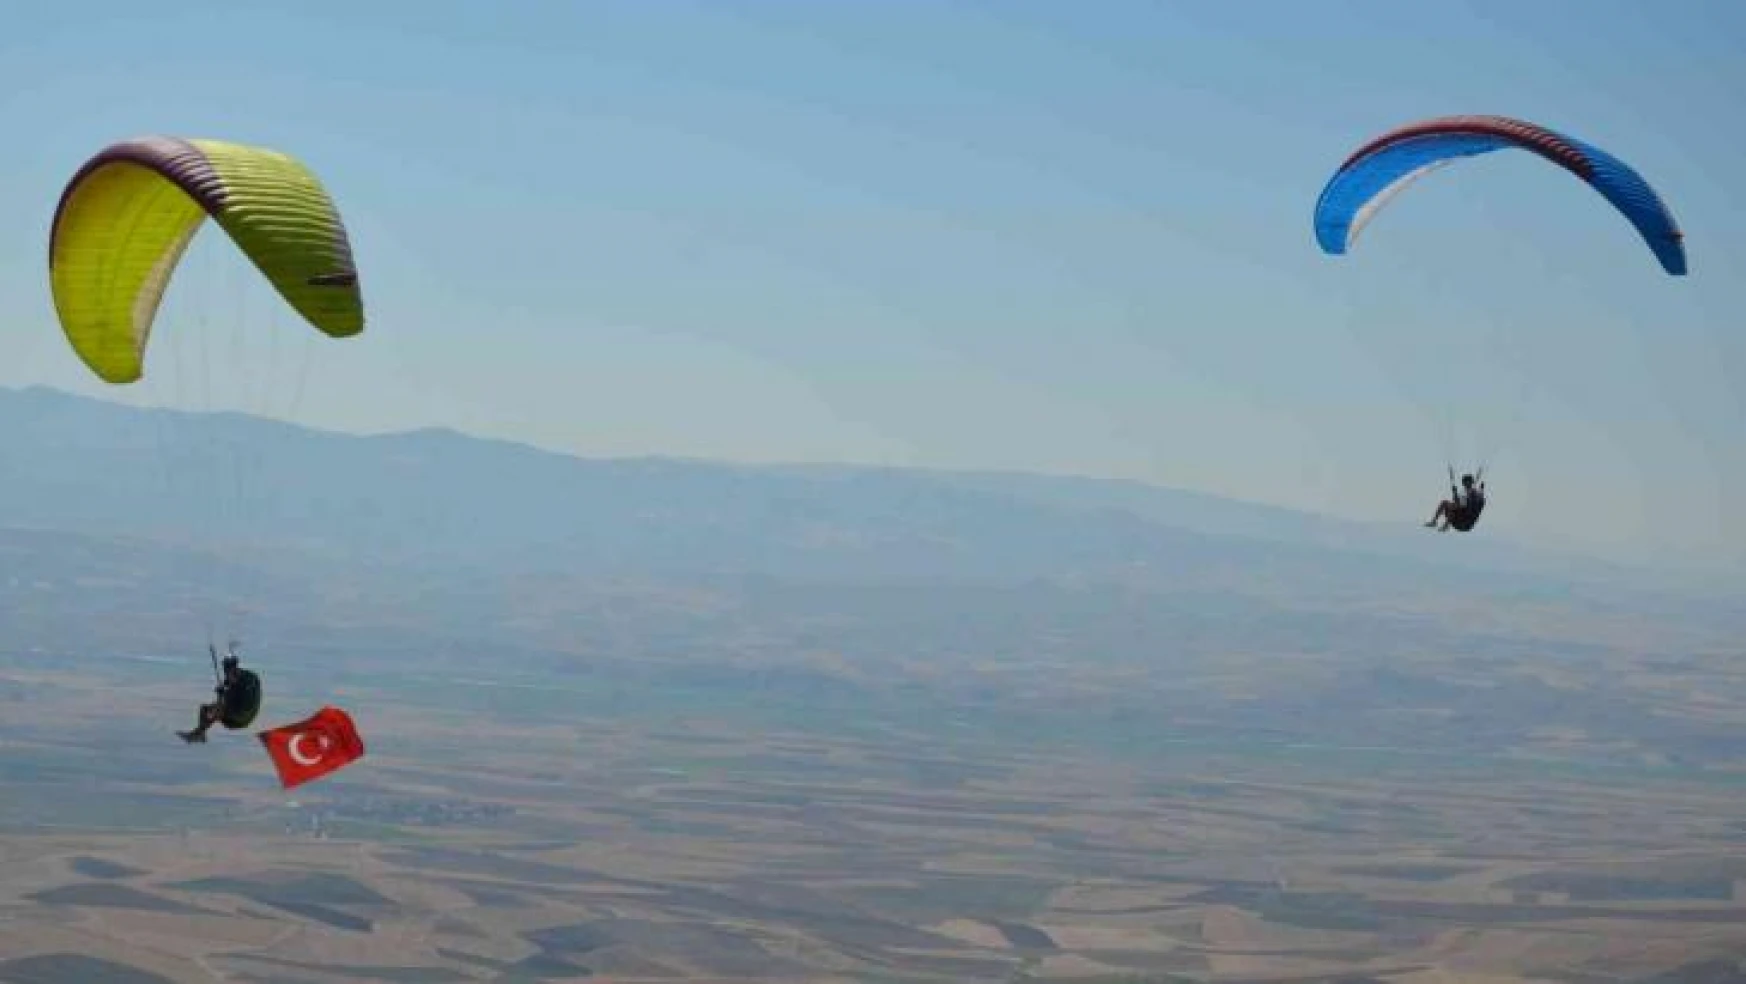 Yamaç paraşütçülerinin yeni gözdesi: Asma Tepesi